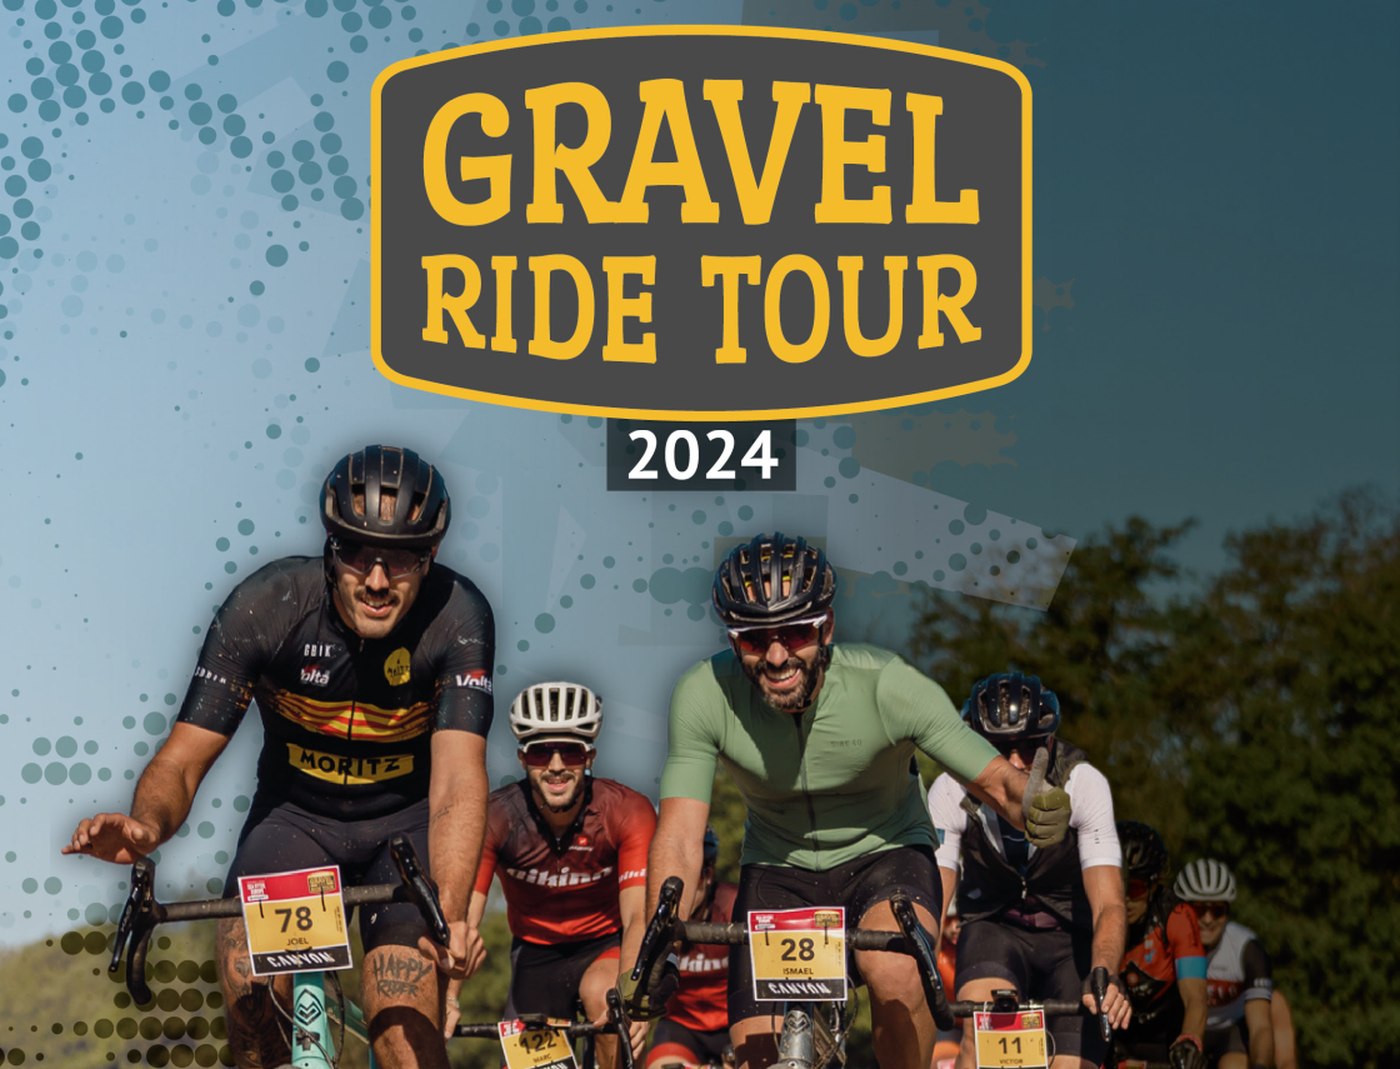 Calendario Gravel Ride Tour 2024 3 pruebas y la esencia de disfrute